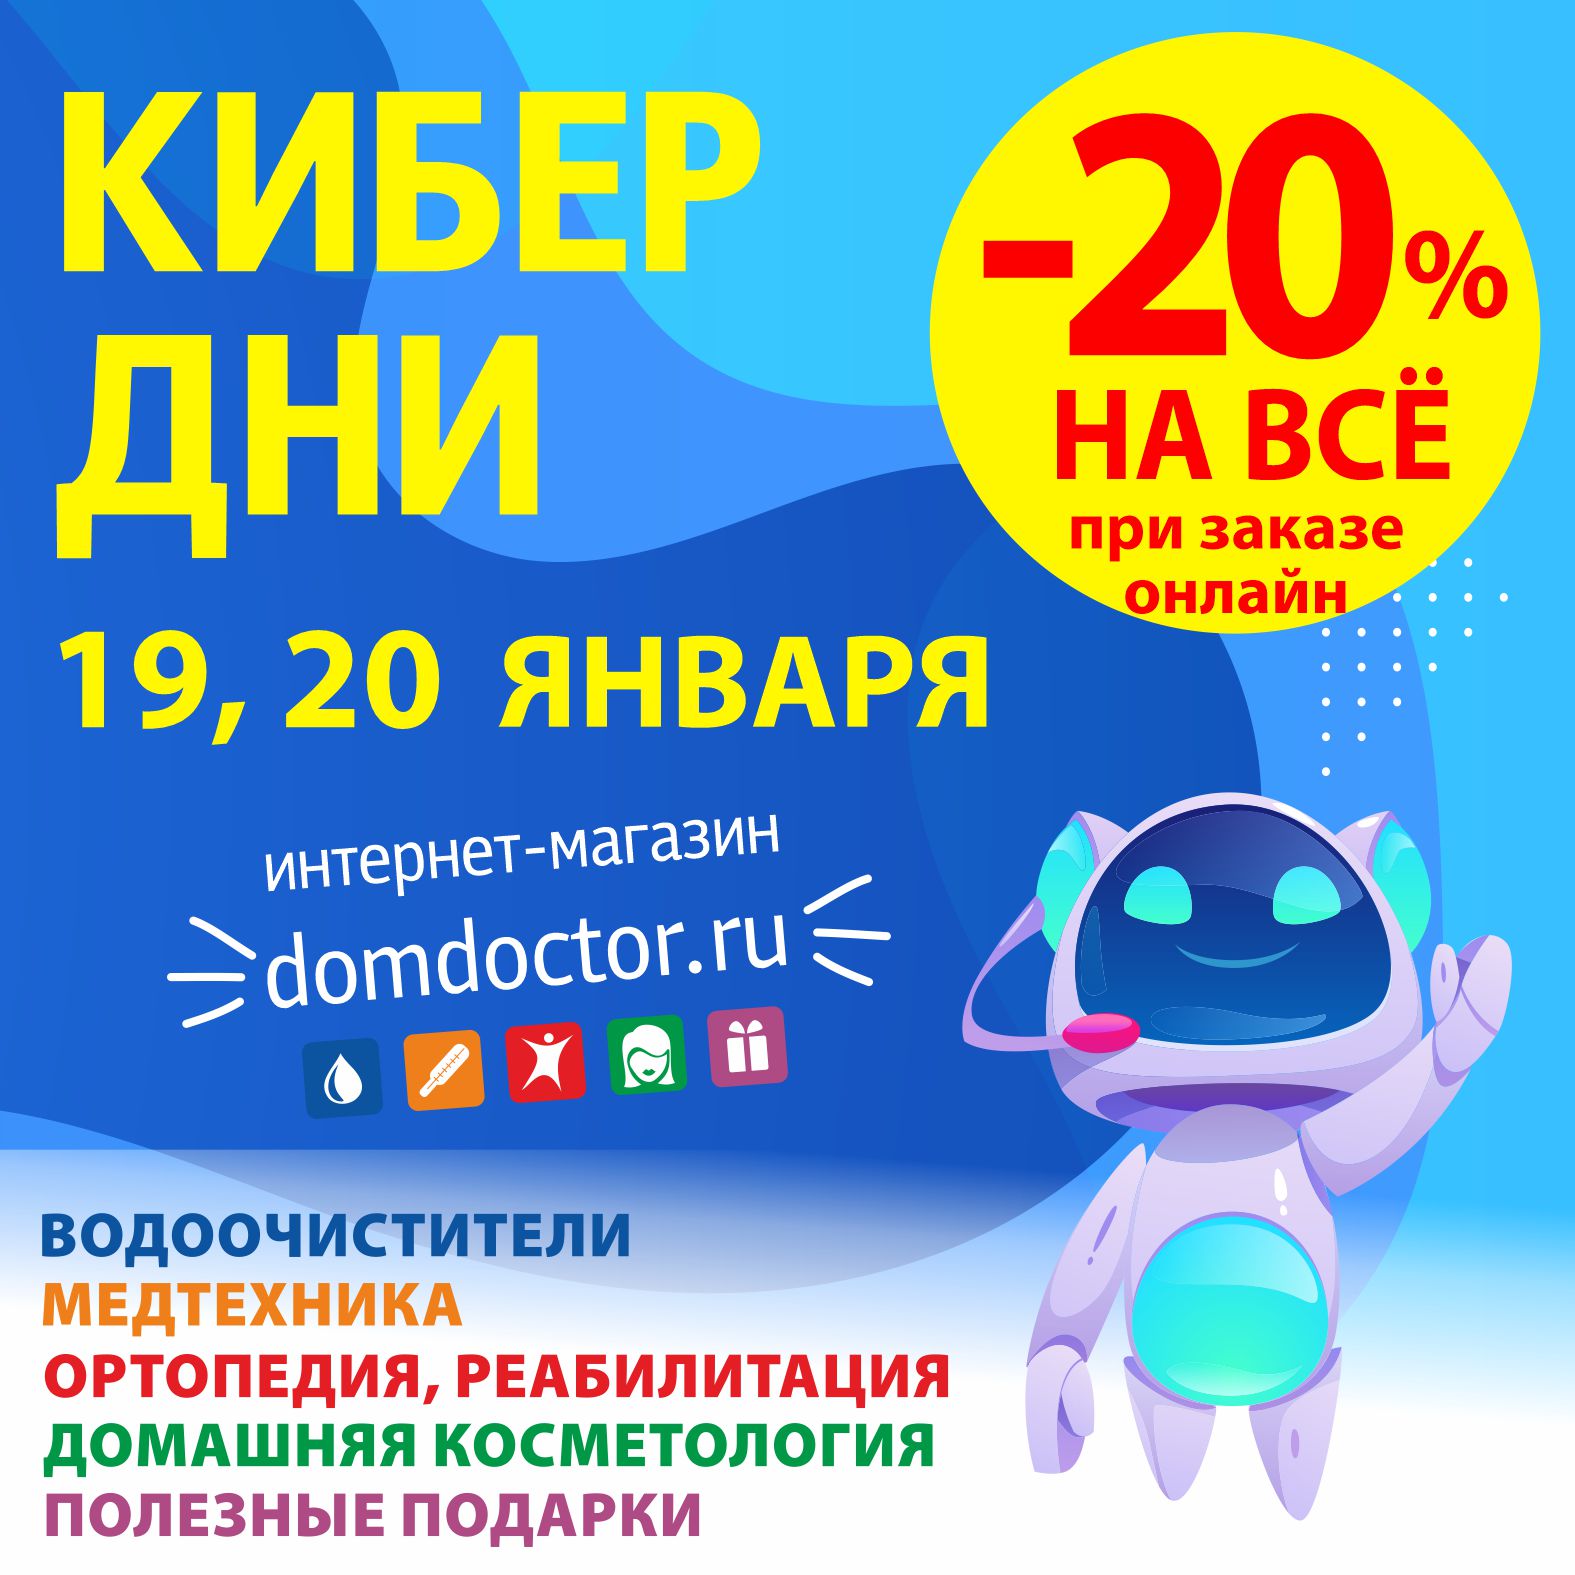 Только 2 дня: 19 и 20 января скидка 20% на всё при заказе в интернет-магазине domdoctor.ru